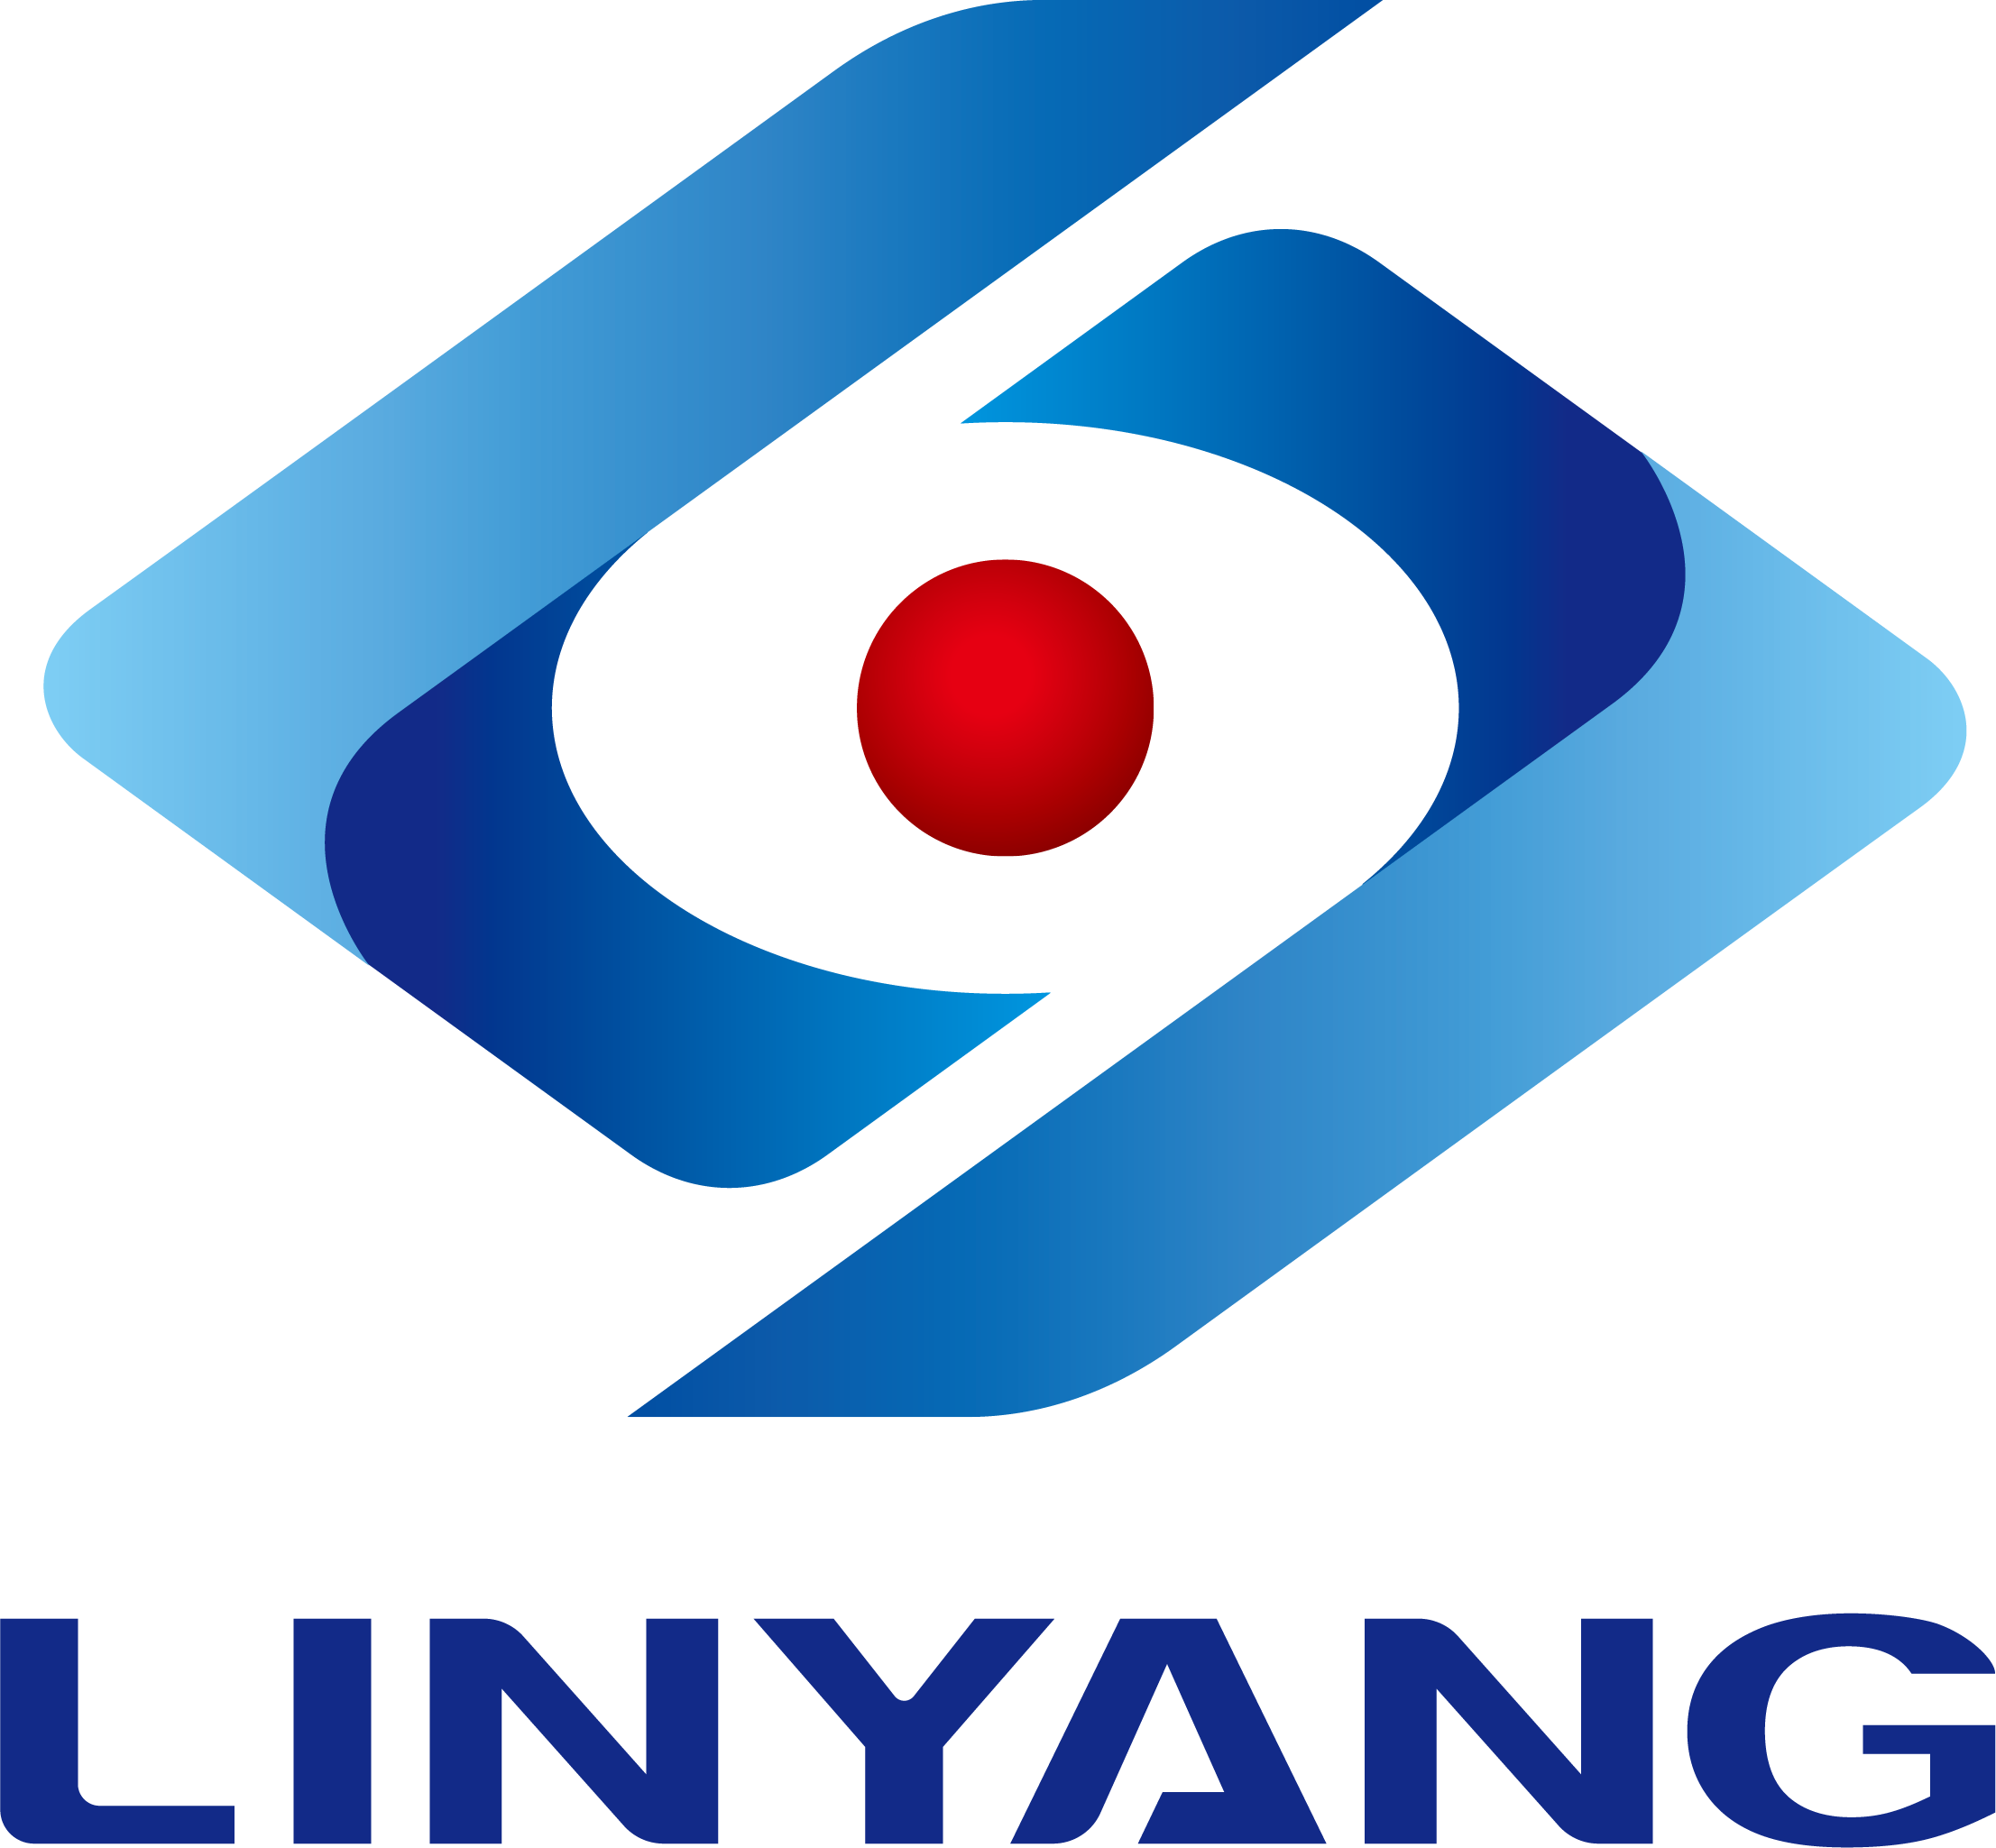 حصلت شركة Linyang PHOTOVOLTAIC على شهادة تشغيل وصيانة TUV Rhine